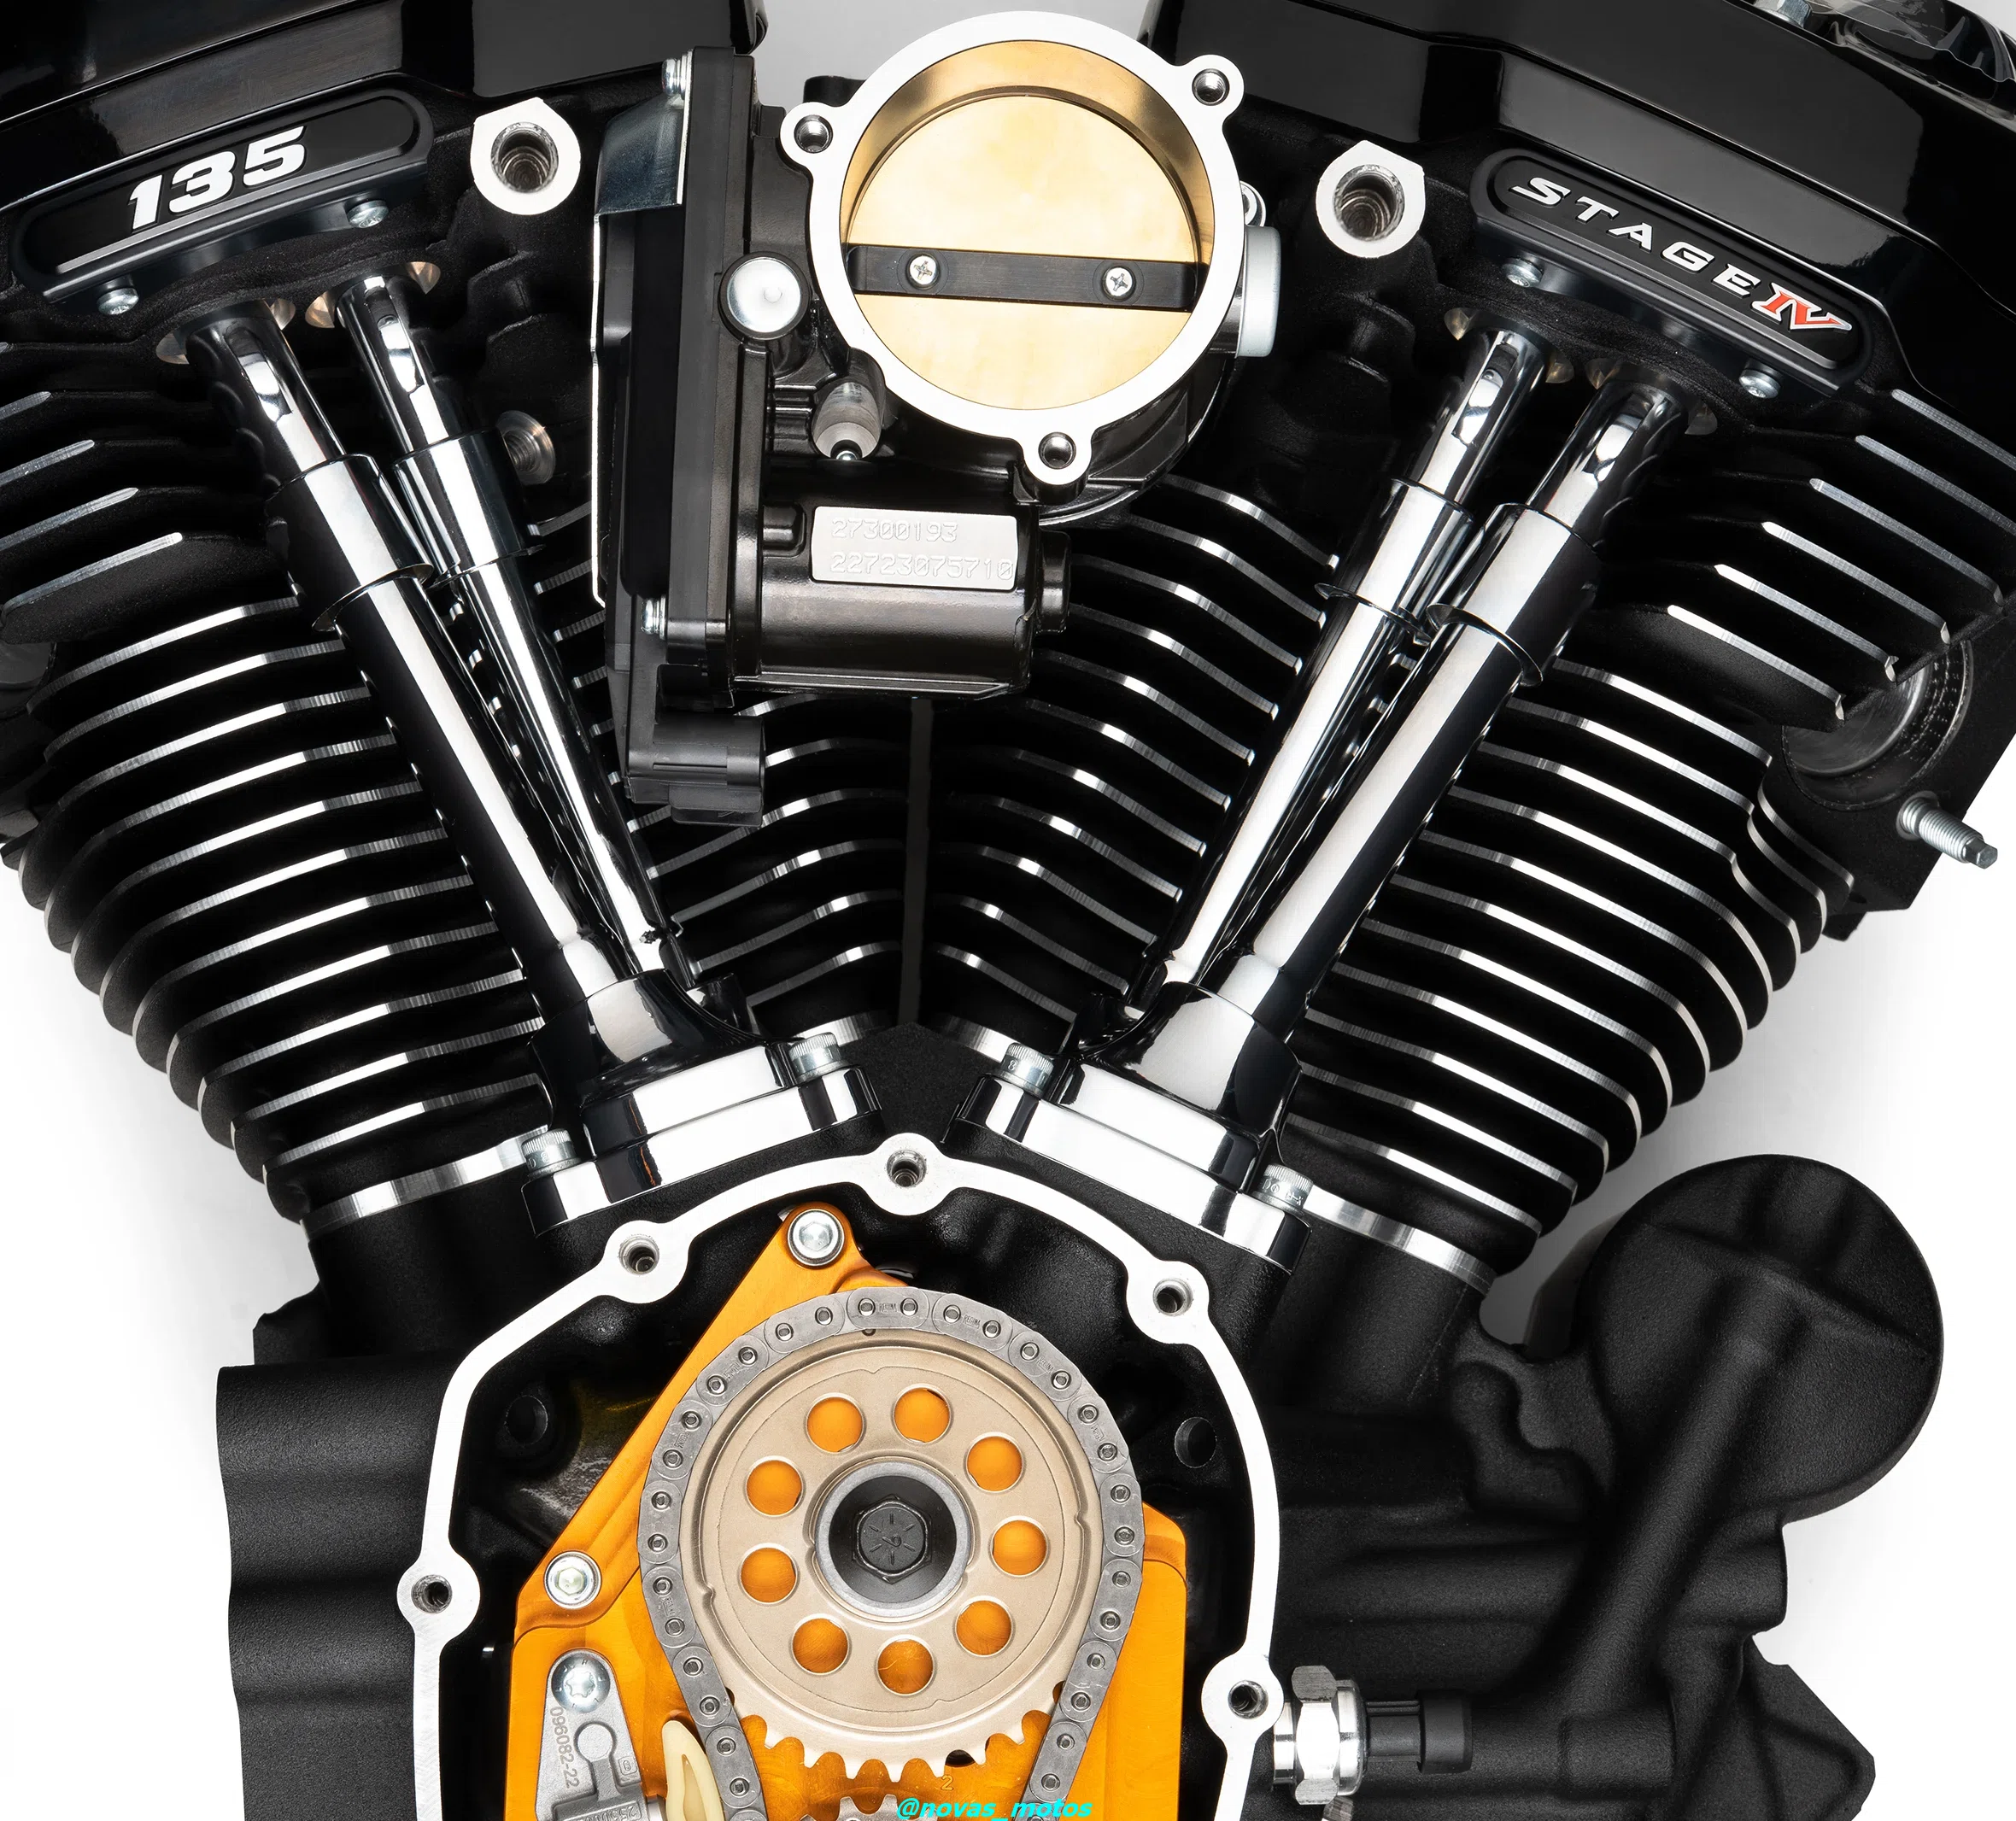 fotos-maior-motor-da-harley-davidson-ja-criado Descubra a potência impressionante do maior motor da Harley-Davidson já criado!